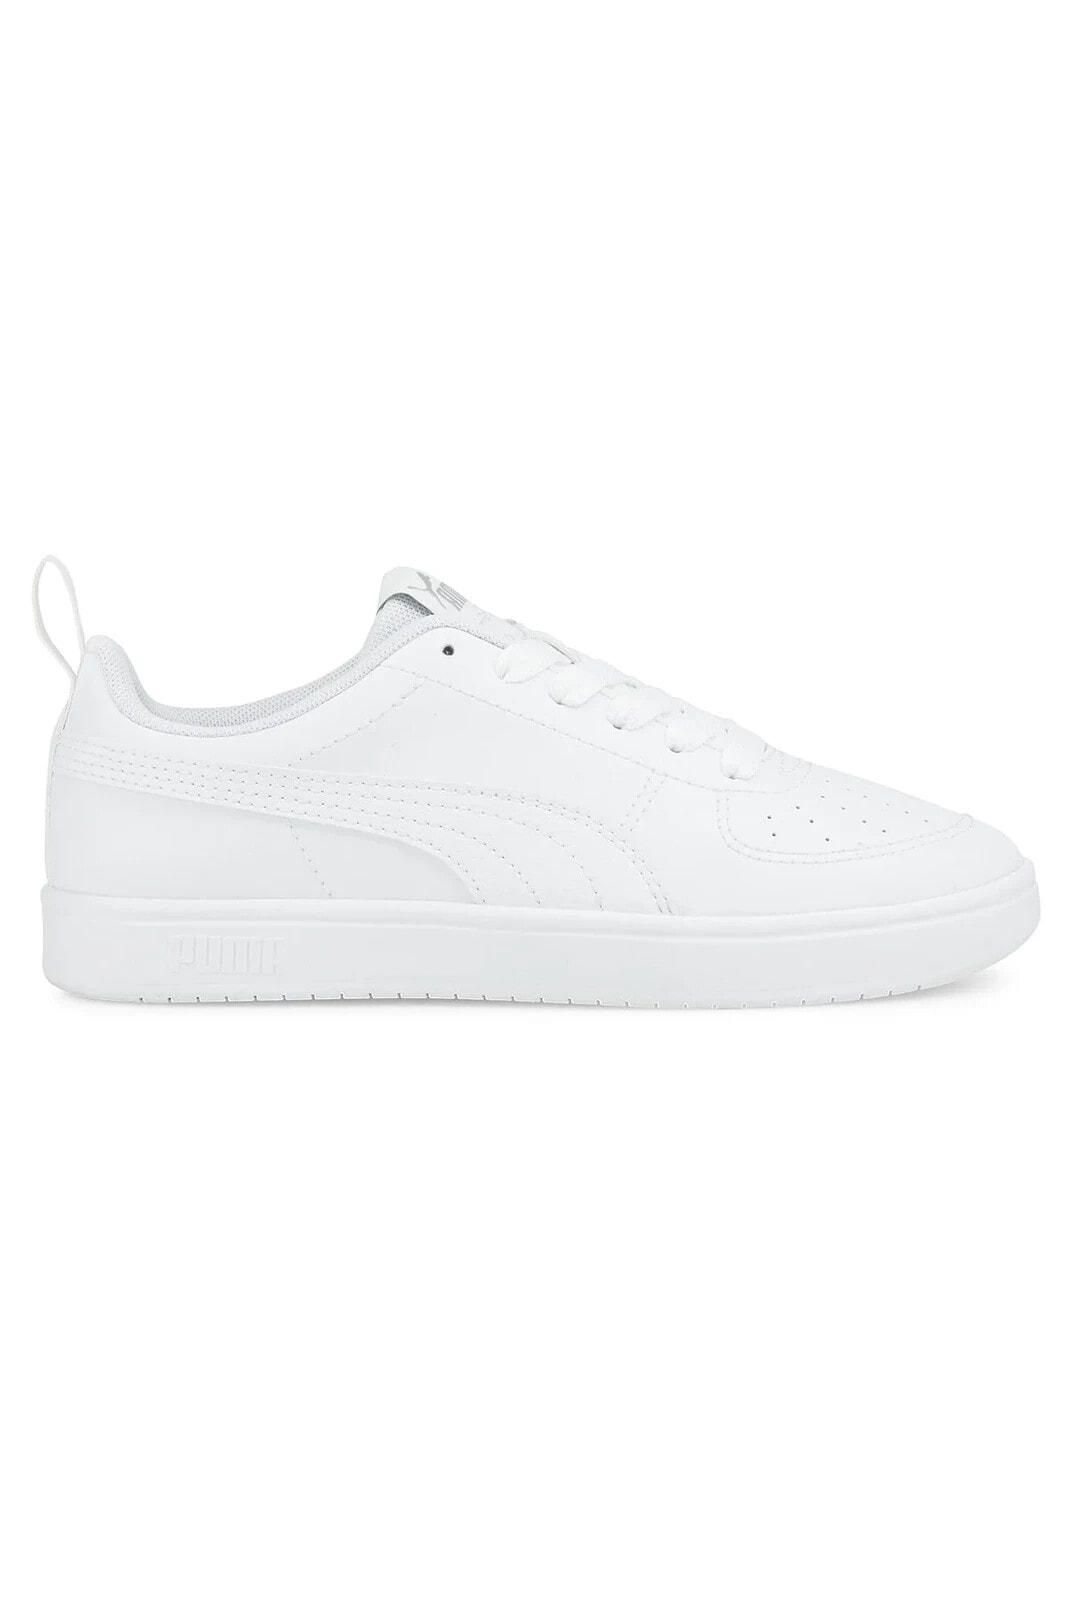 Unisex Sneaker - Puma Rickie Jr Puma White-Puma White-Gla - 38431101